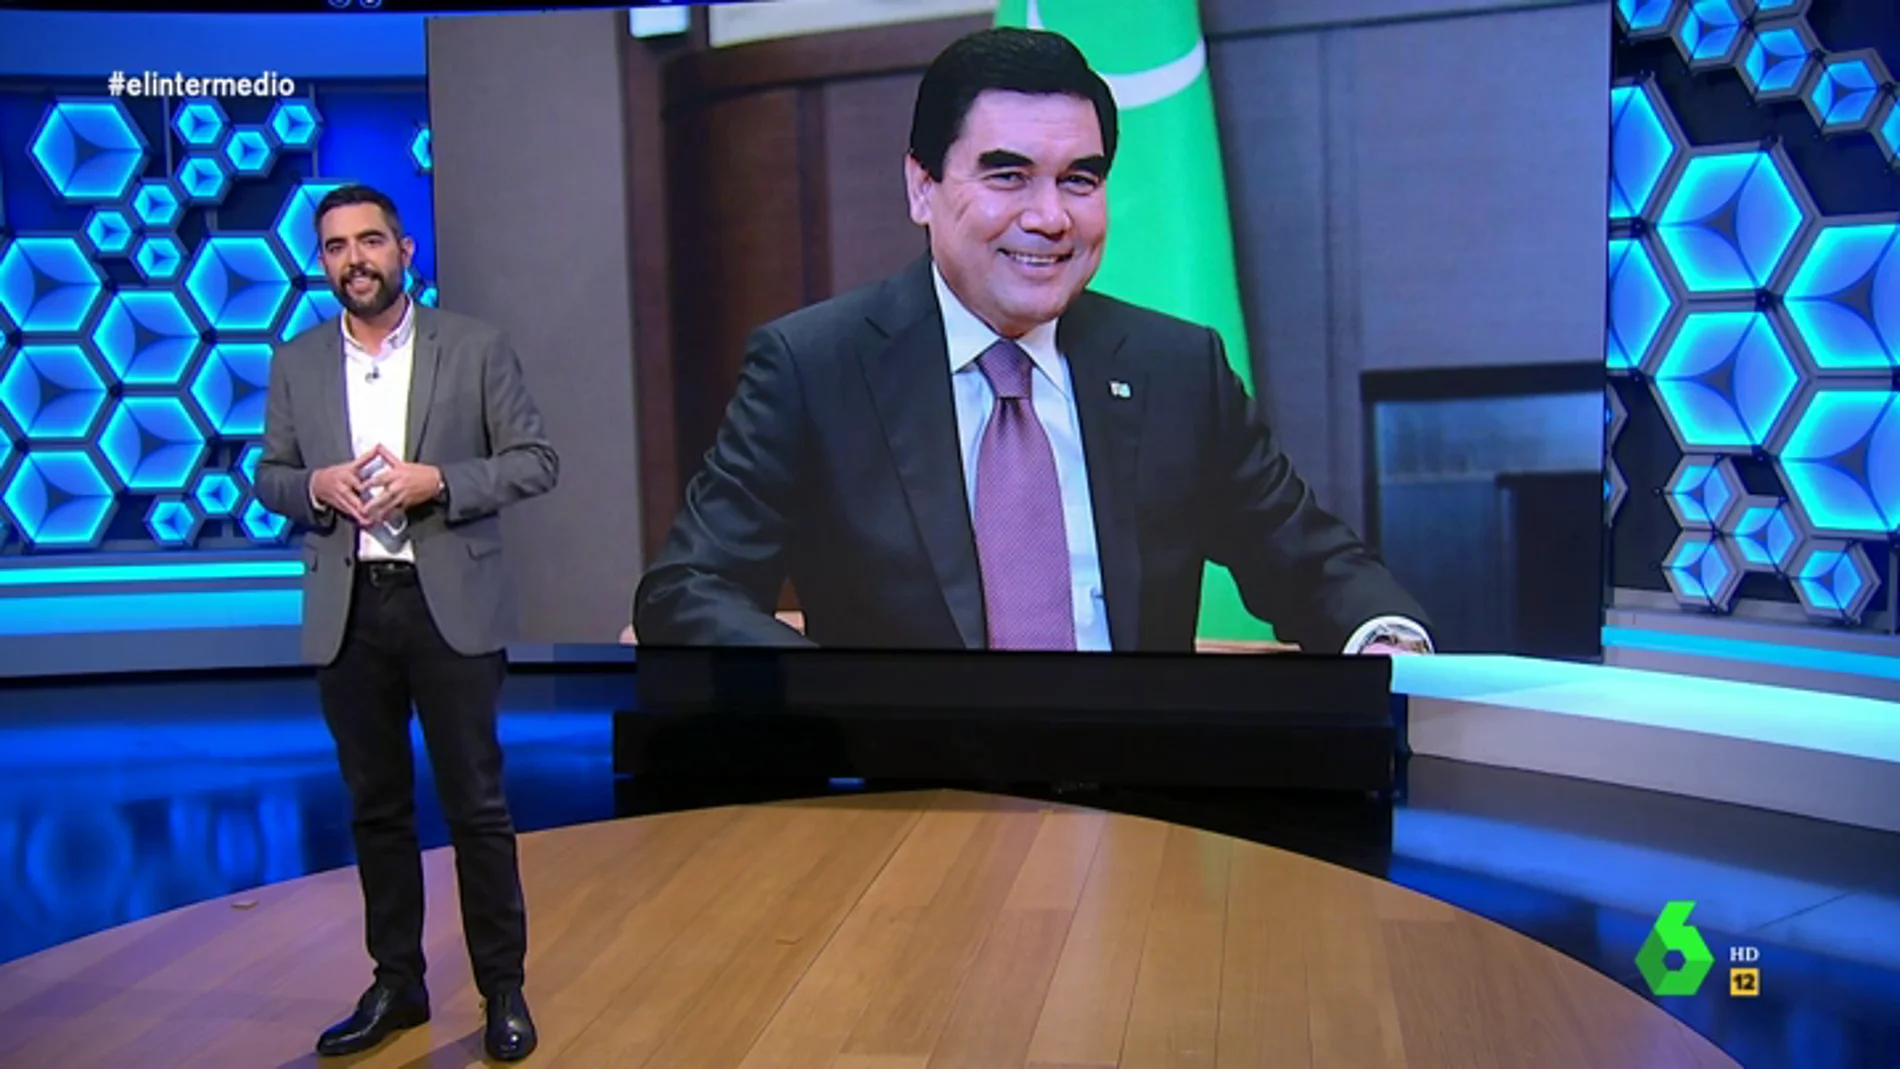 Las excentricidades del presidente de Turkmenistán que harán que te sientas "afortunado" con los políticos "del montón" de España